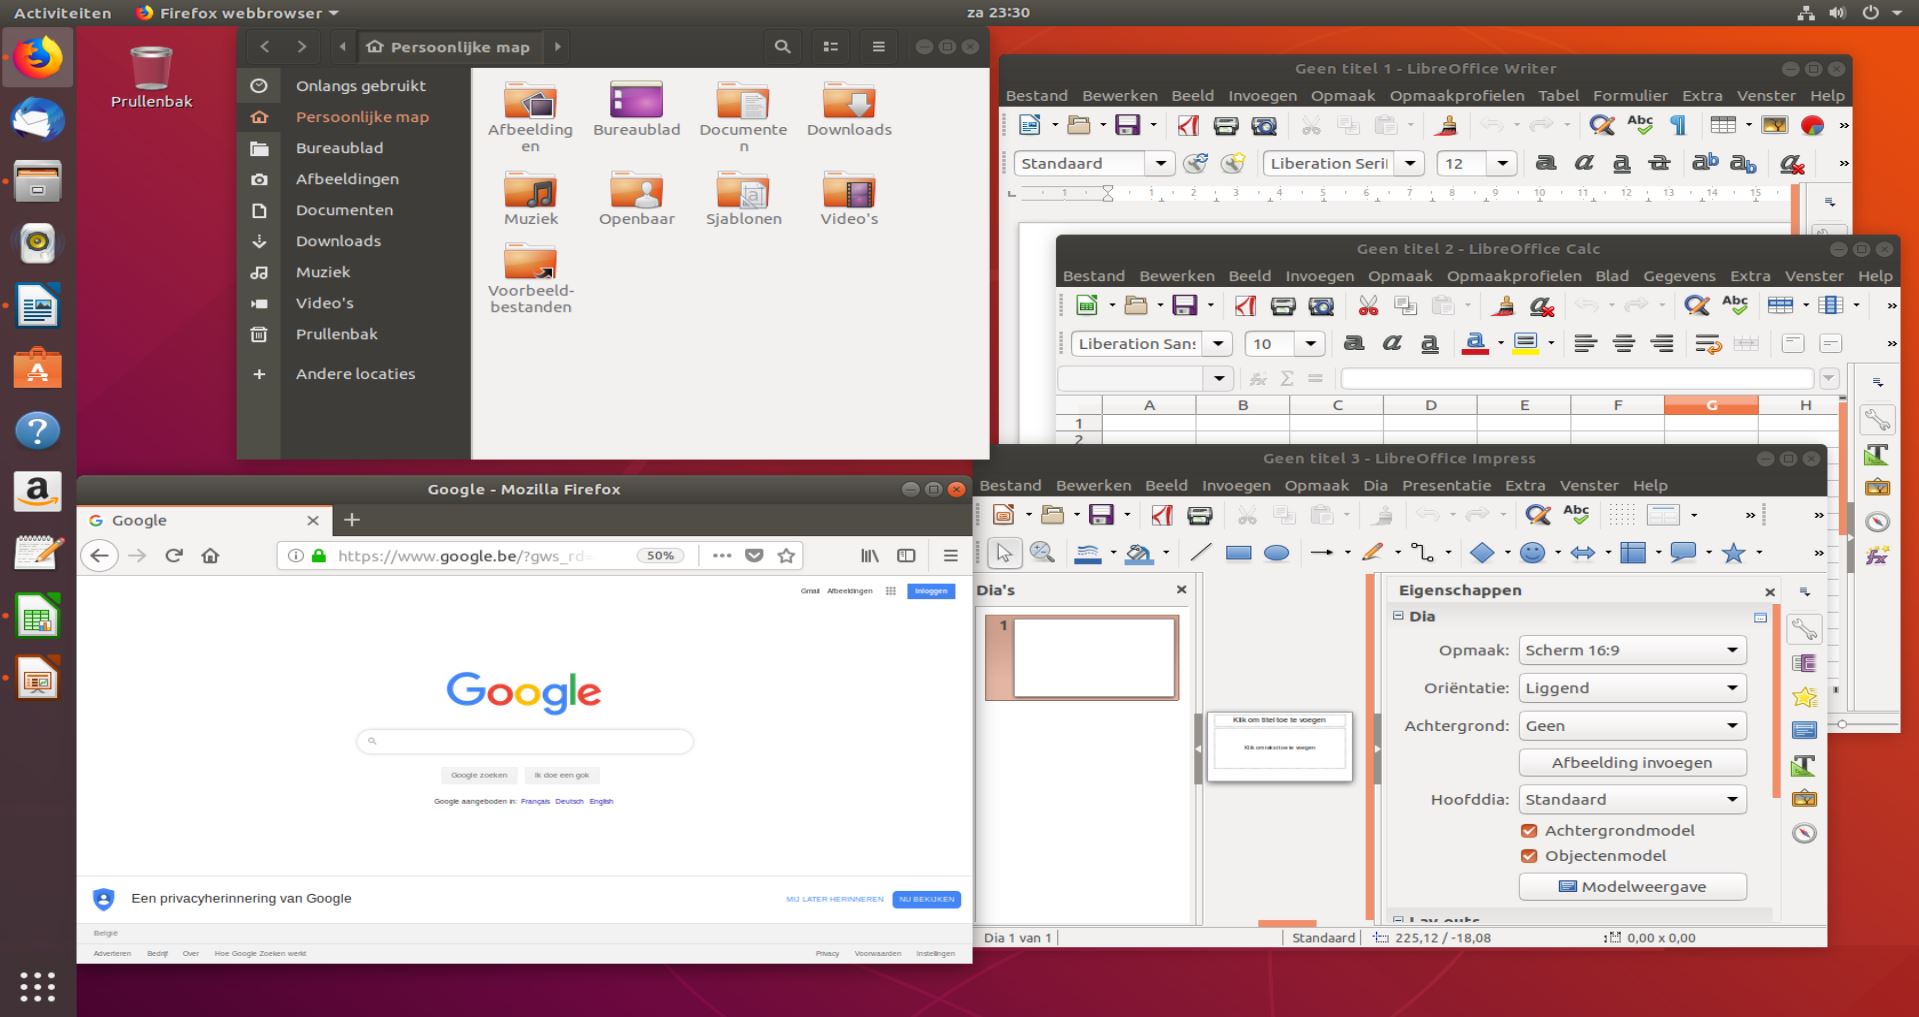 schermafbeelding van Ubuntu